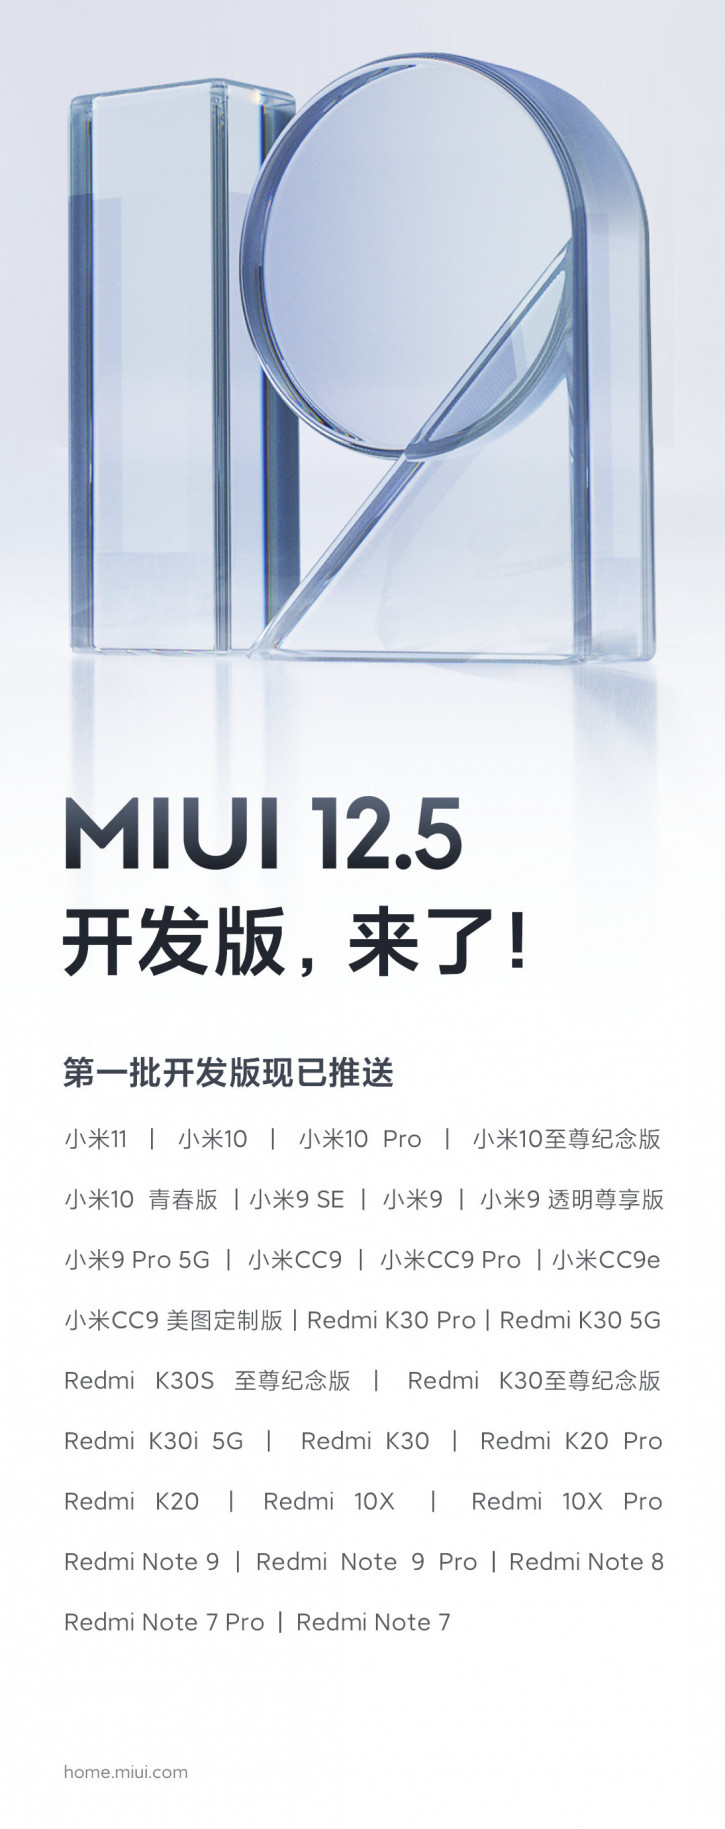 28 моделей Xiaomi и Redmi получают MIUI 12.5